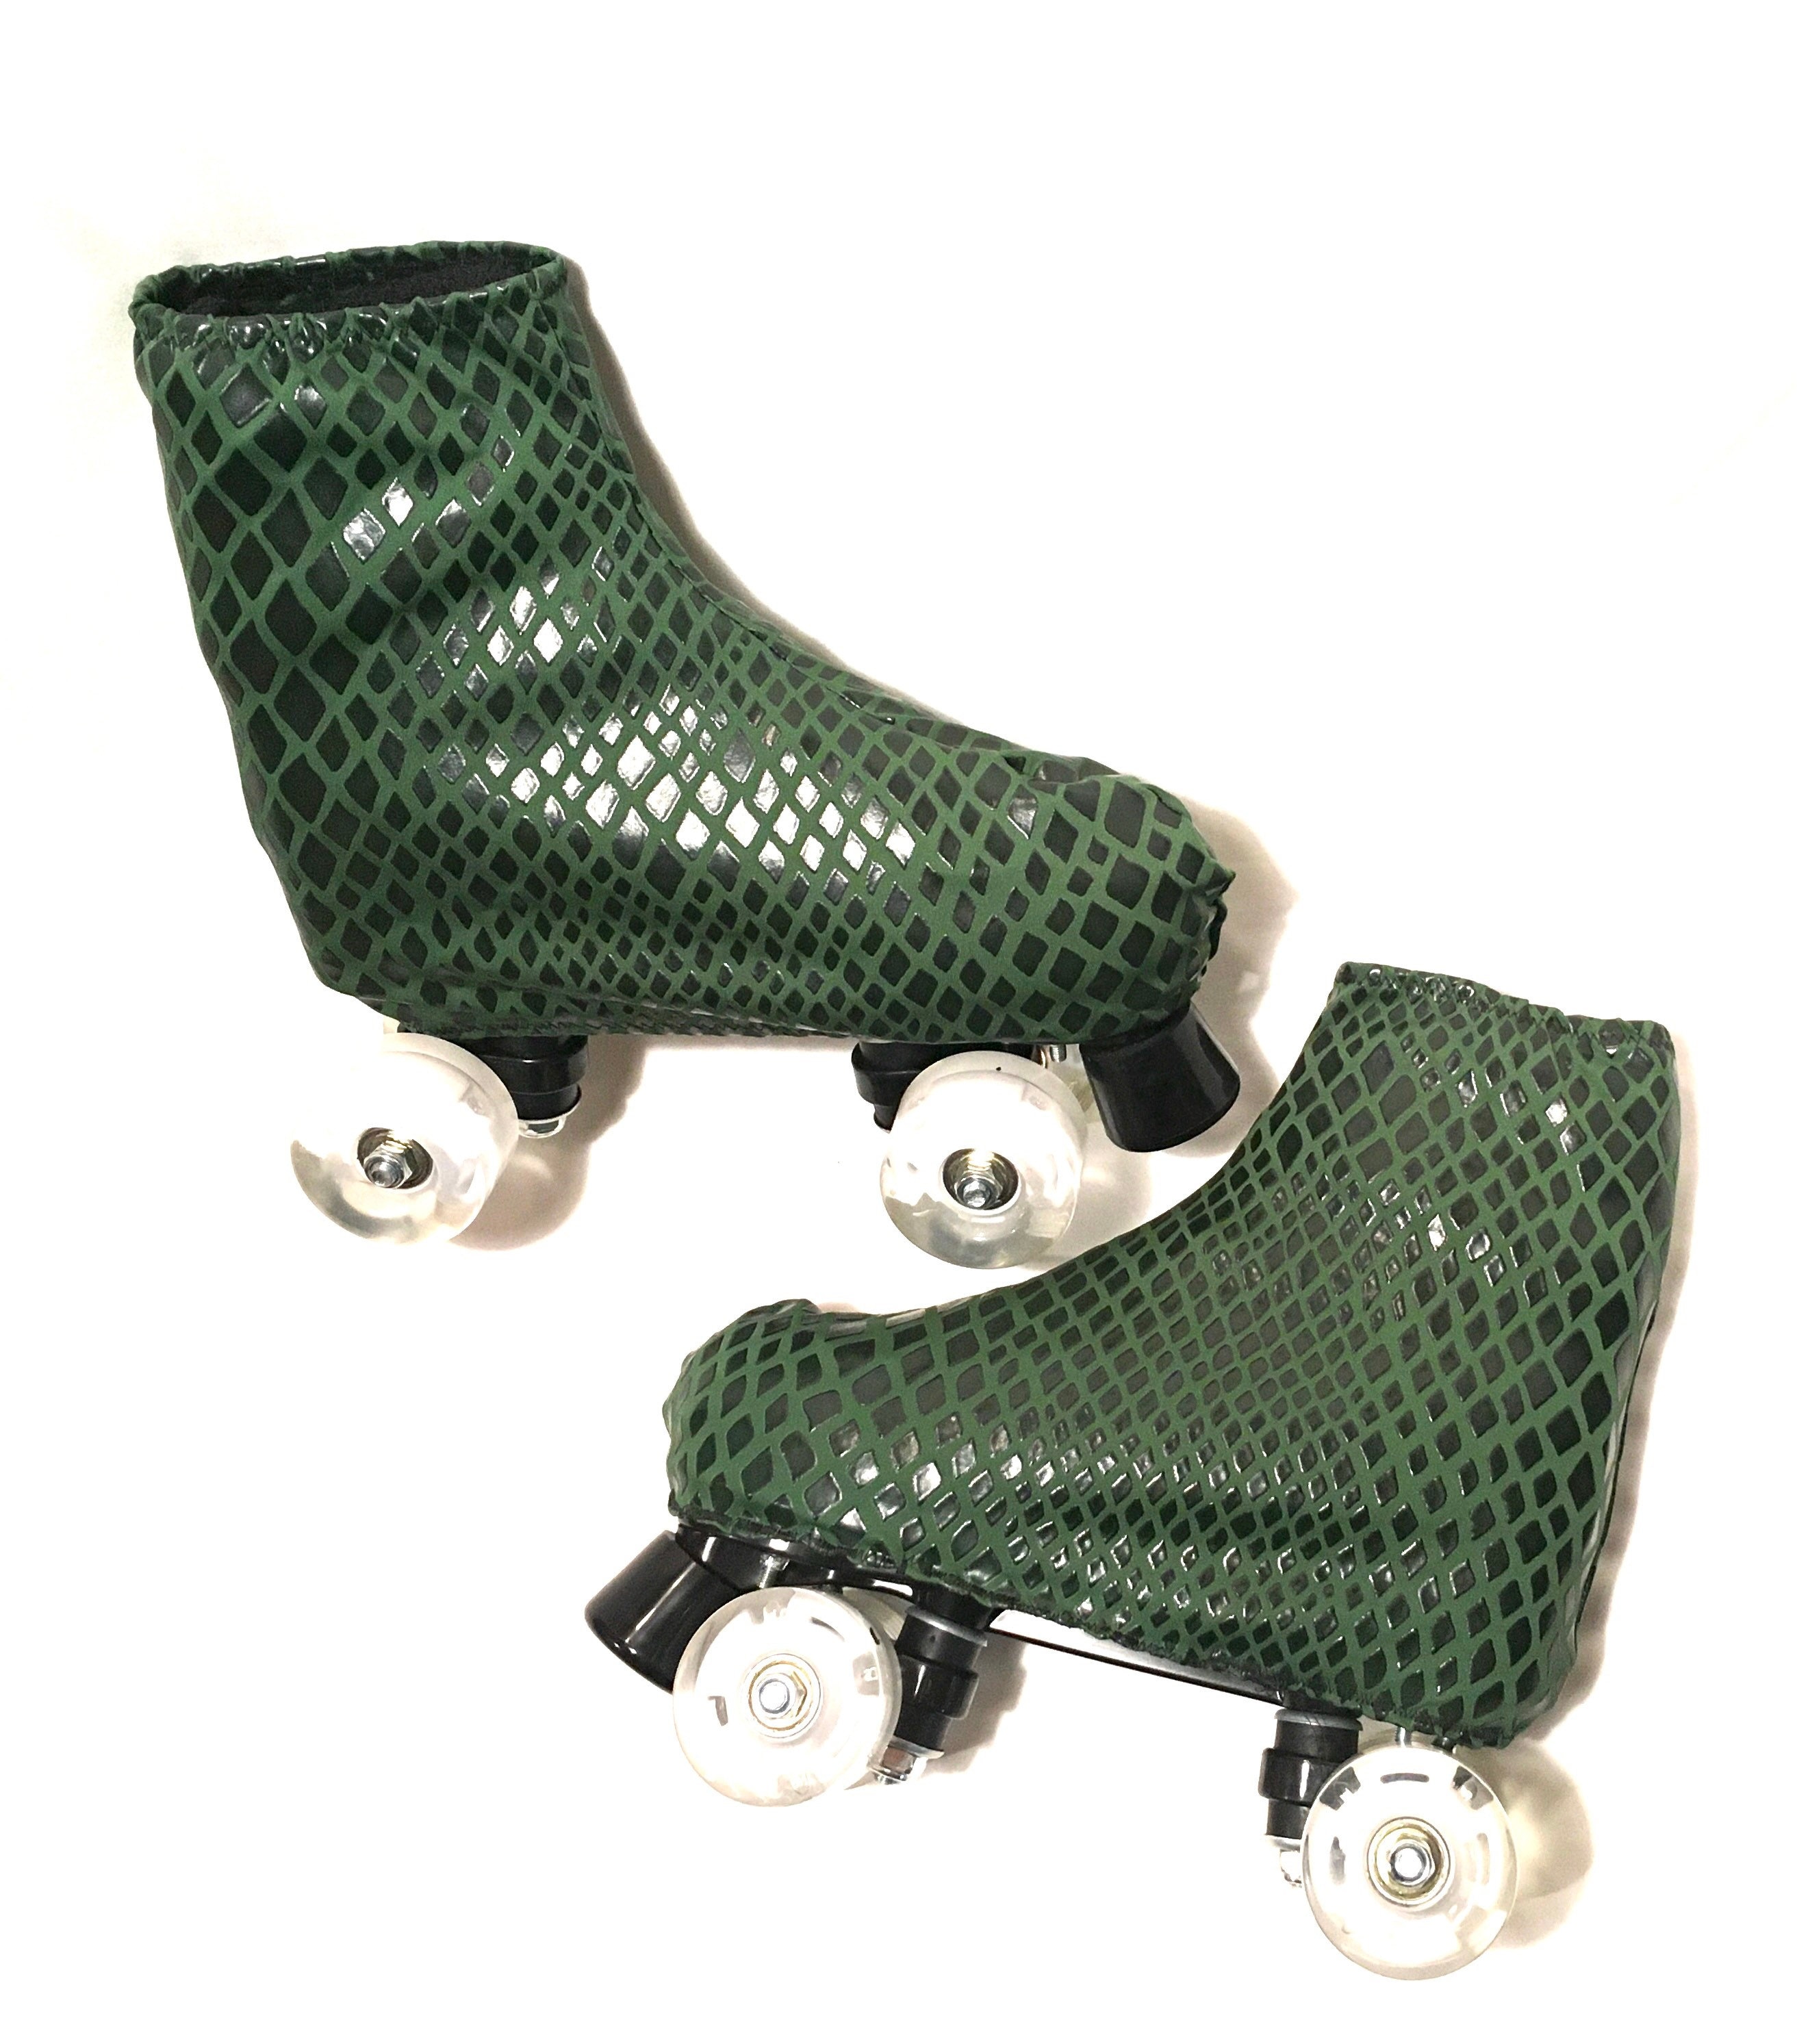 Roller Skate Chain/roller Skate Skalet/roller Skate Charm/roller Skate  Accessories 